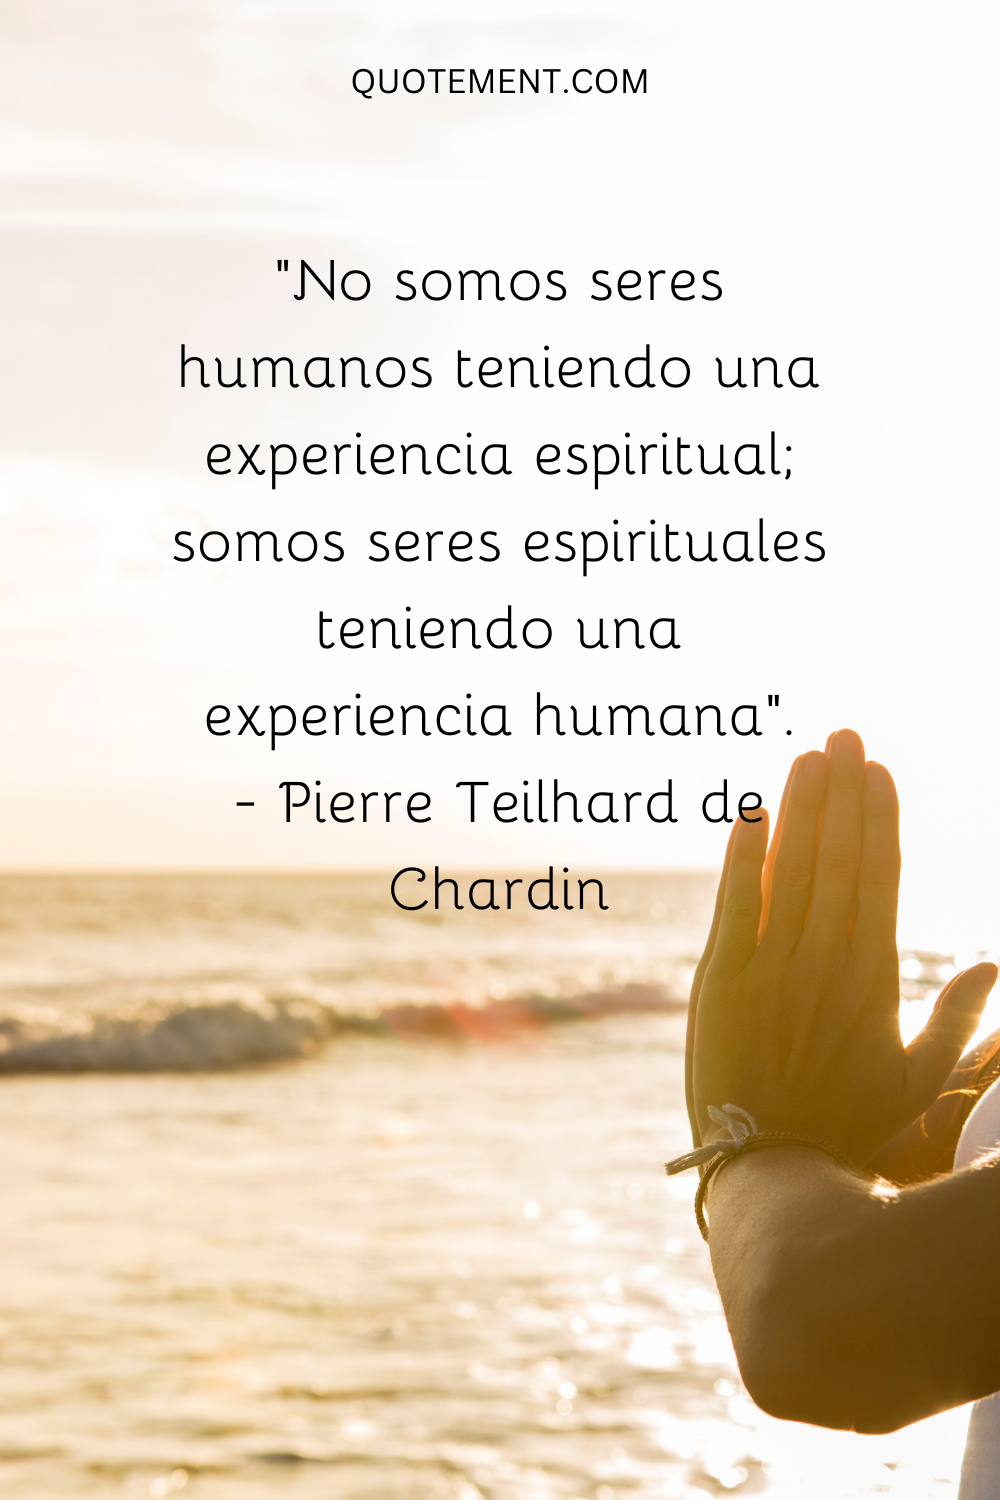 No somos seres humanos que viven una experiencia espiritual